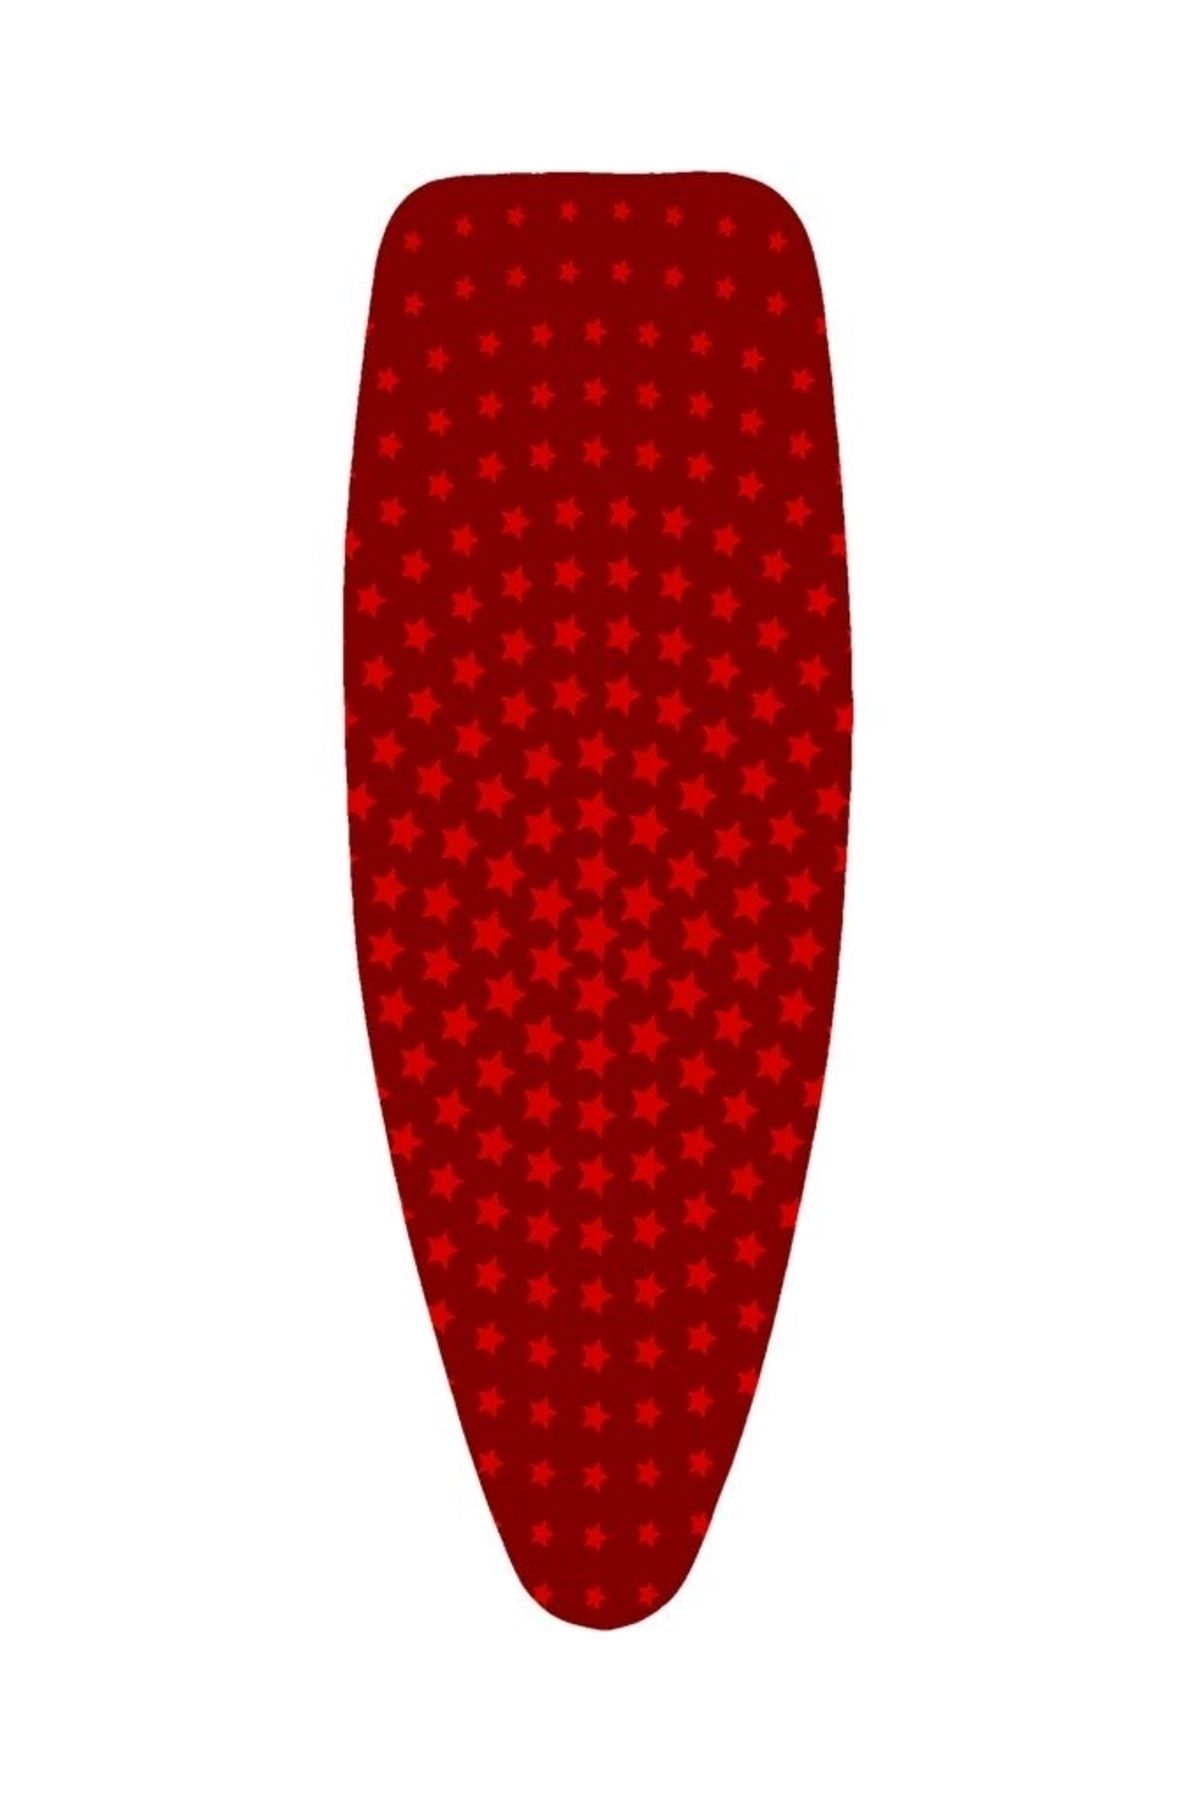 GERCELLA Xxl(57X162 CM) Luxury Red Star Ütü Masası Kılıfı